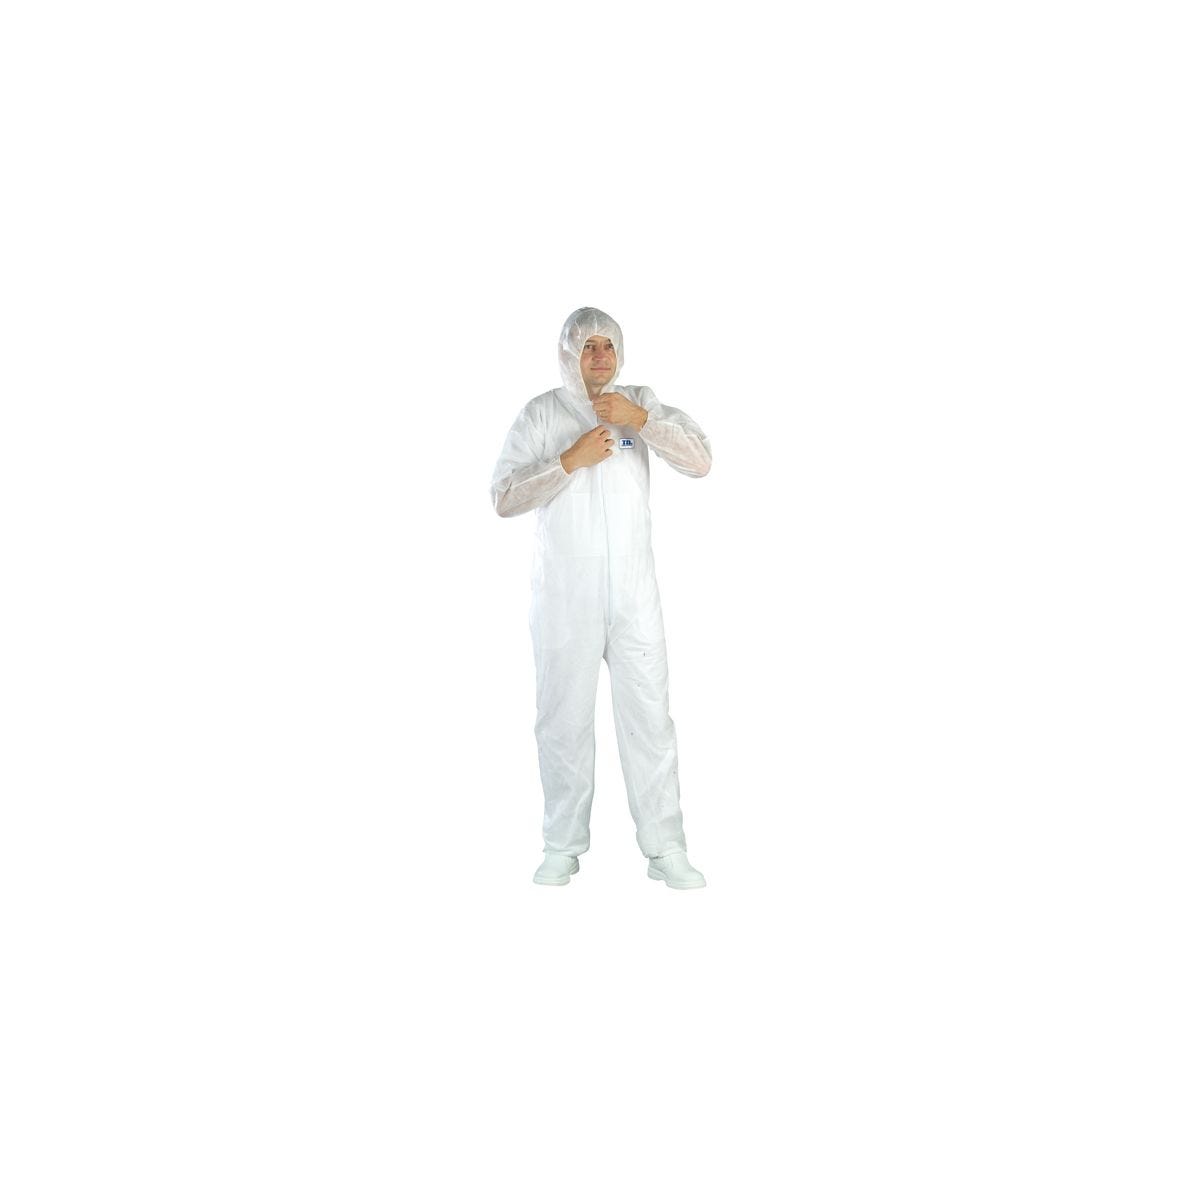 Combinaison SPP 40g/m² blanc avec capuche - COVERGUARD - Taille M 0